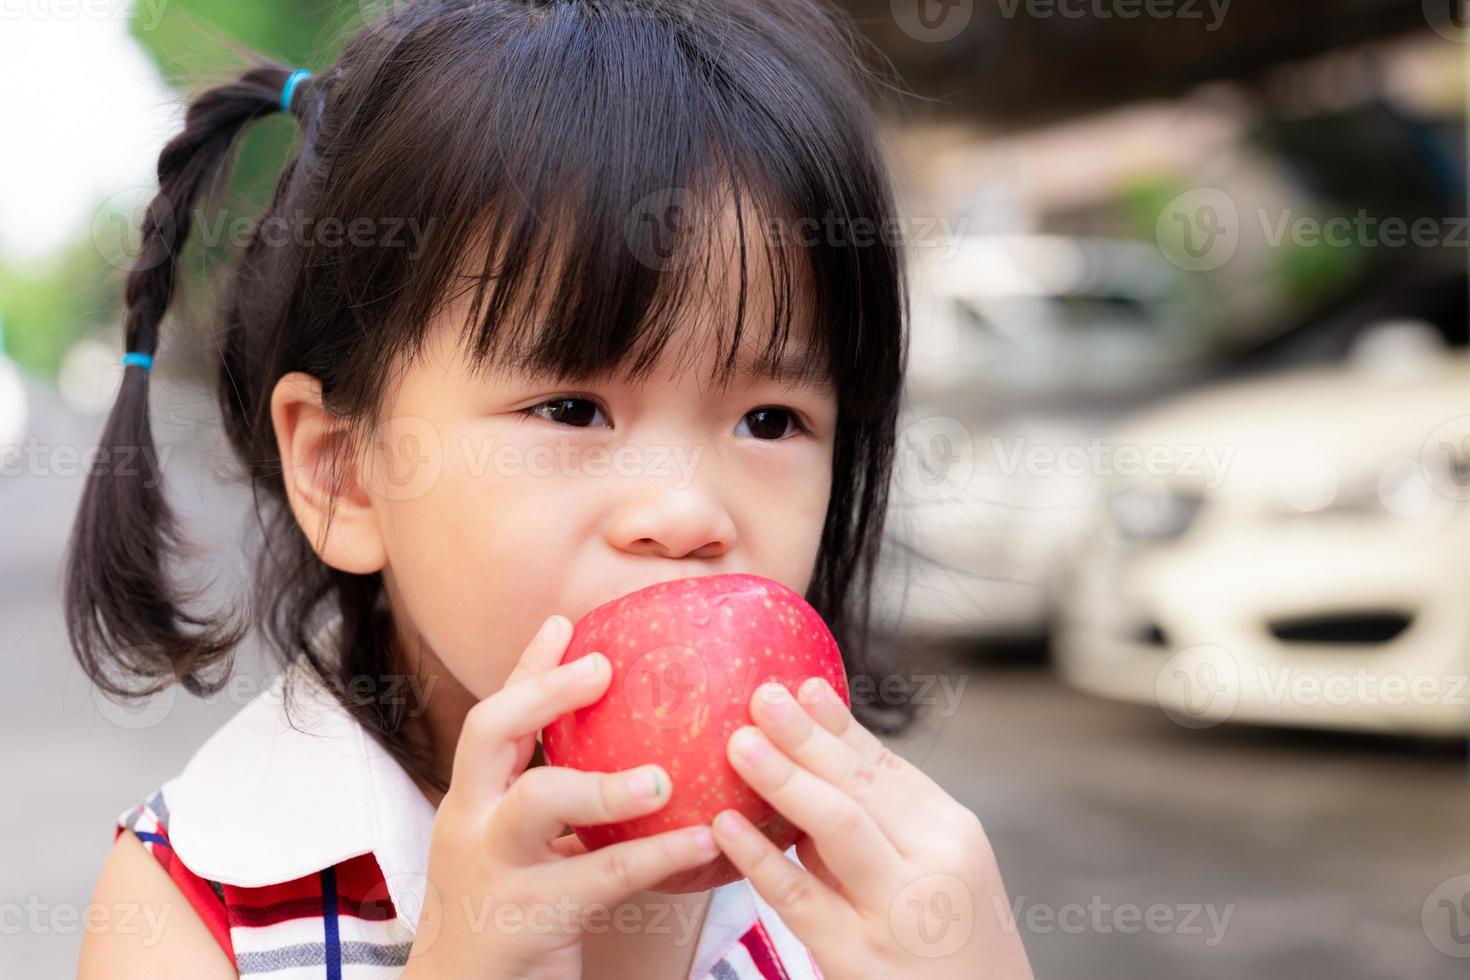 la cabeza corta de linda chica está mordiendo una manzana roja. los niños comen fruta. chica asiática usa dos manos para sostener una manzana. El niño pequeño tiene 3 años y medio. foto